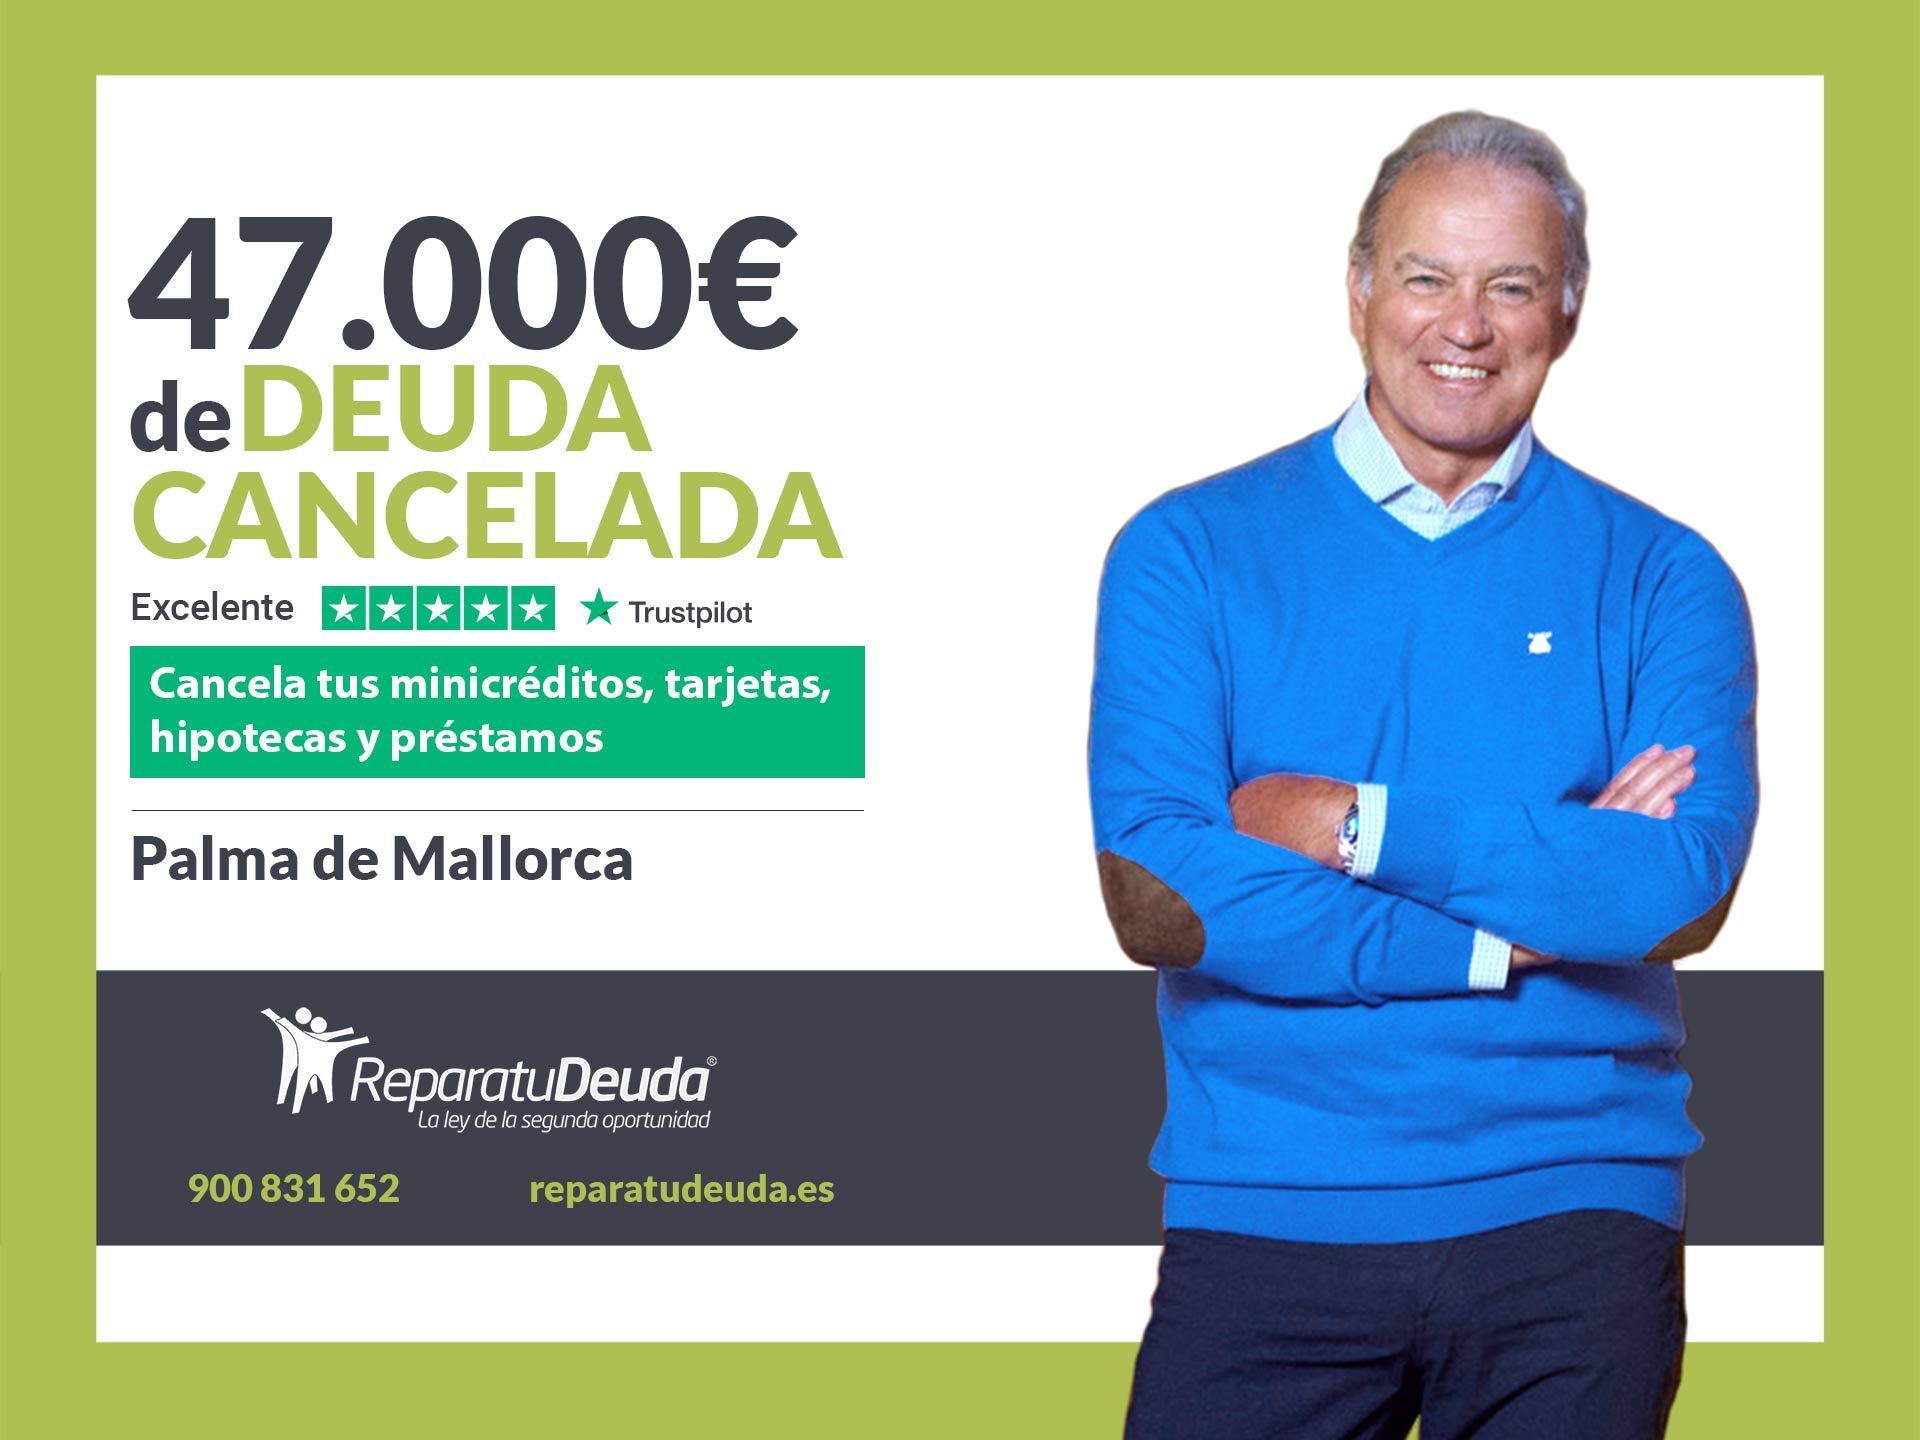 Repara tu Deuda Abogados cancela 47.000? en Palma de Mallorca (Baleares) con la Ley de Segunda Oportunidad